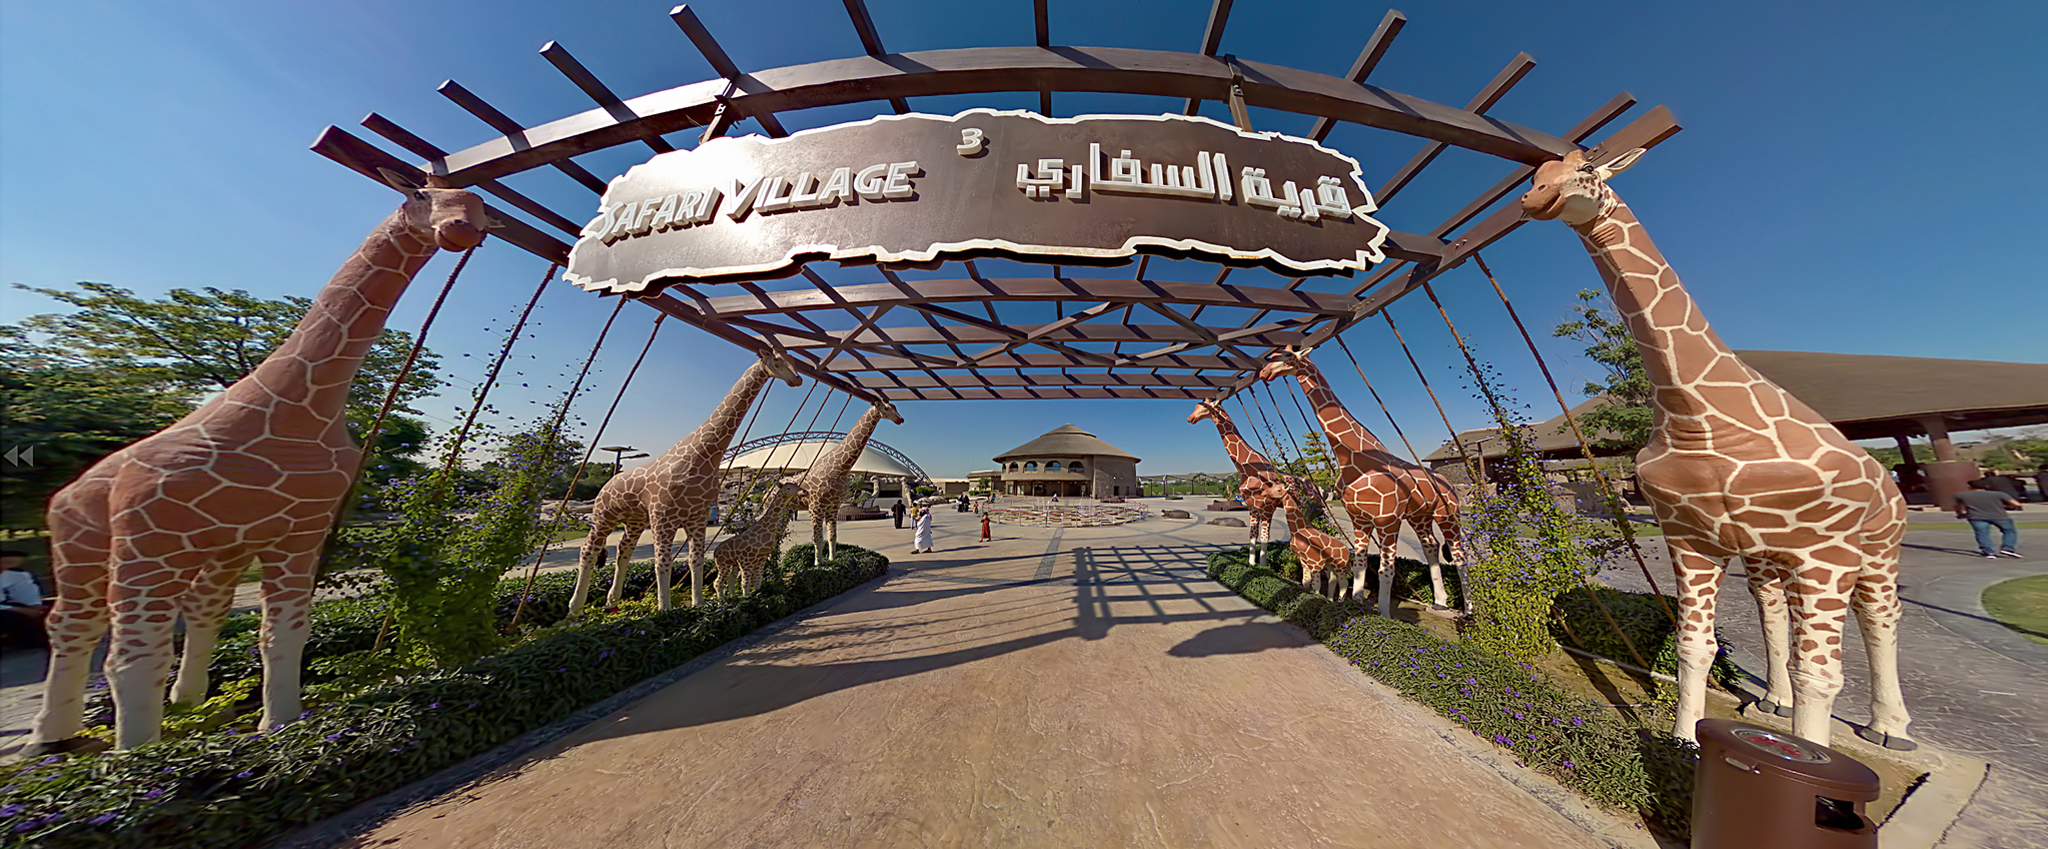 Dubai Safari Village UAE